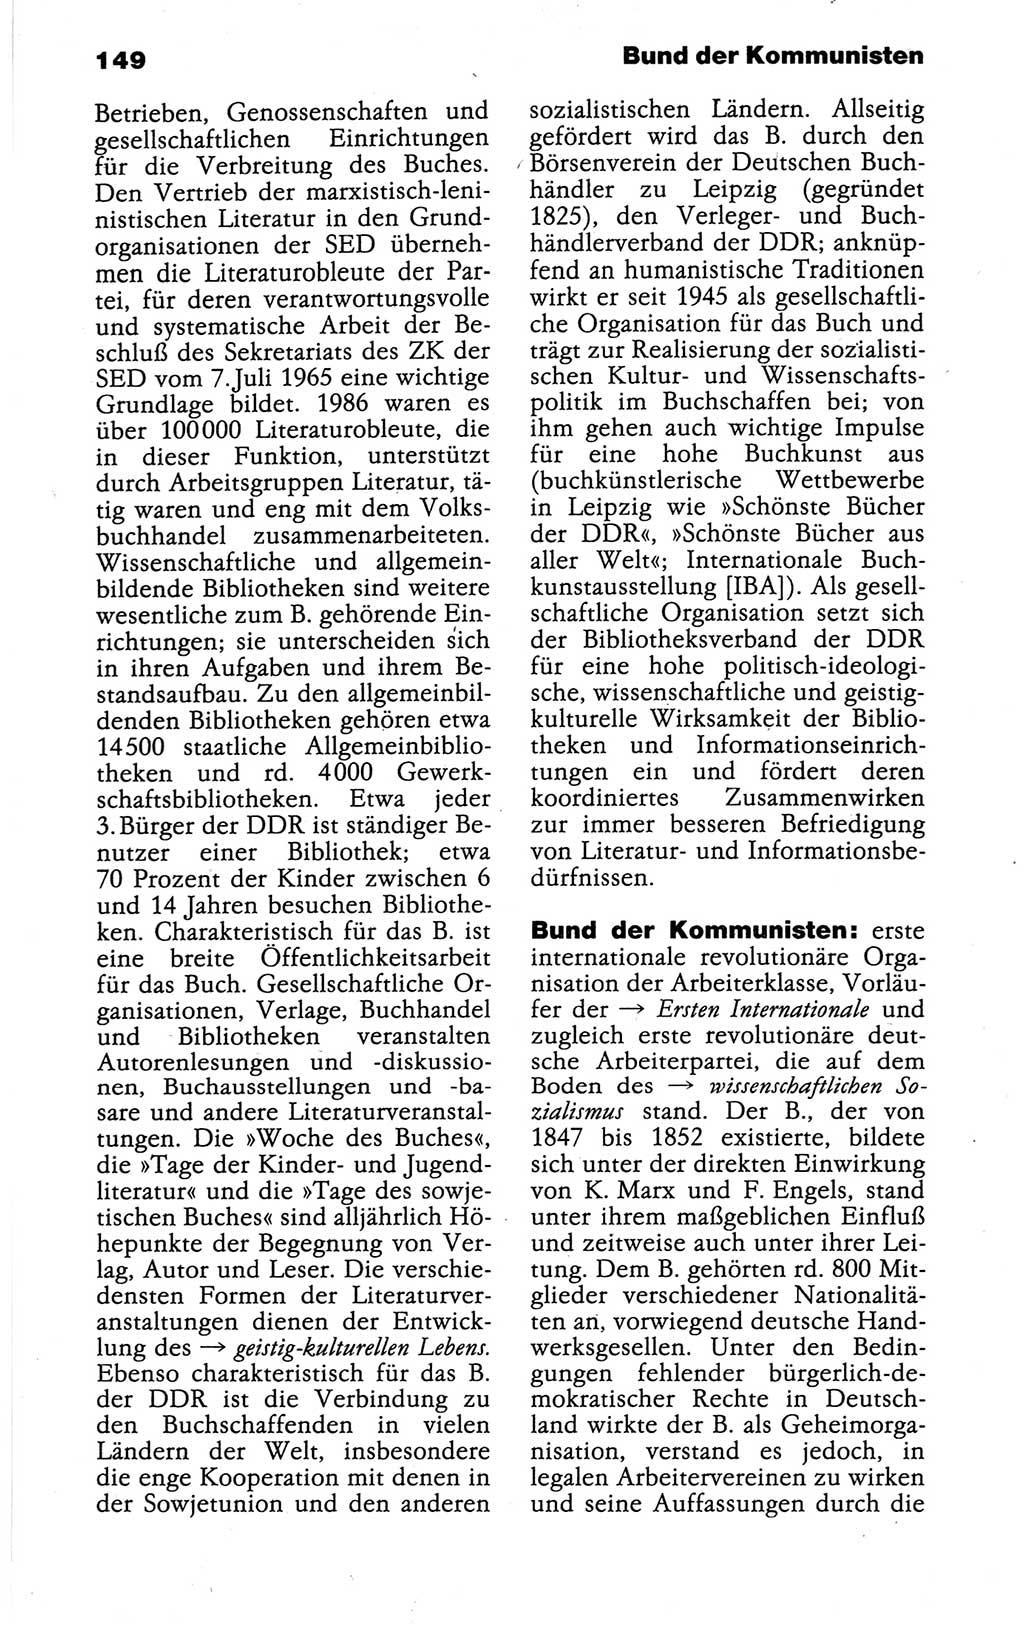 Kleines politisches Wörterbuch [Deutsche Demokratische Republik (DDR)] 1988, Seite 149 (Kl. pol. Wb. DDR 1988, S. 149)